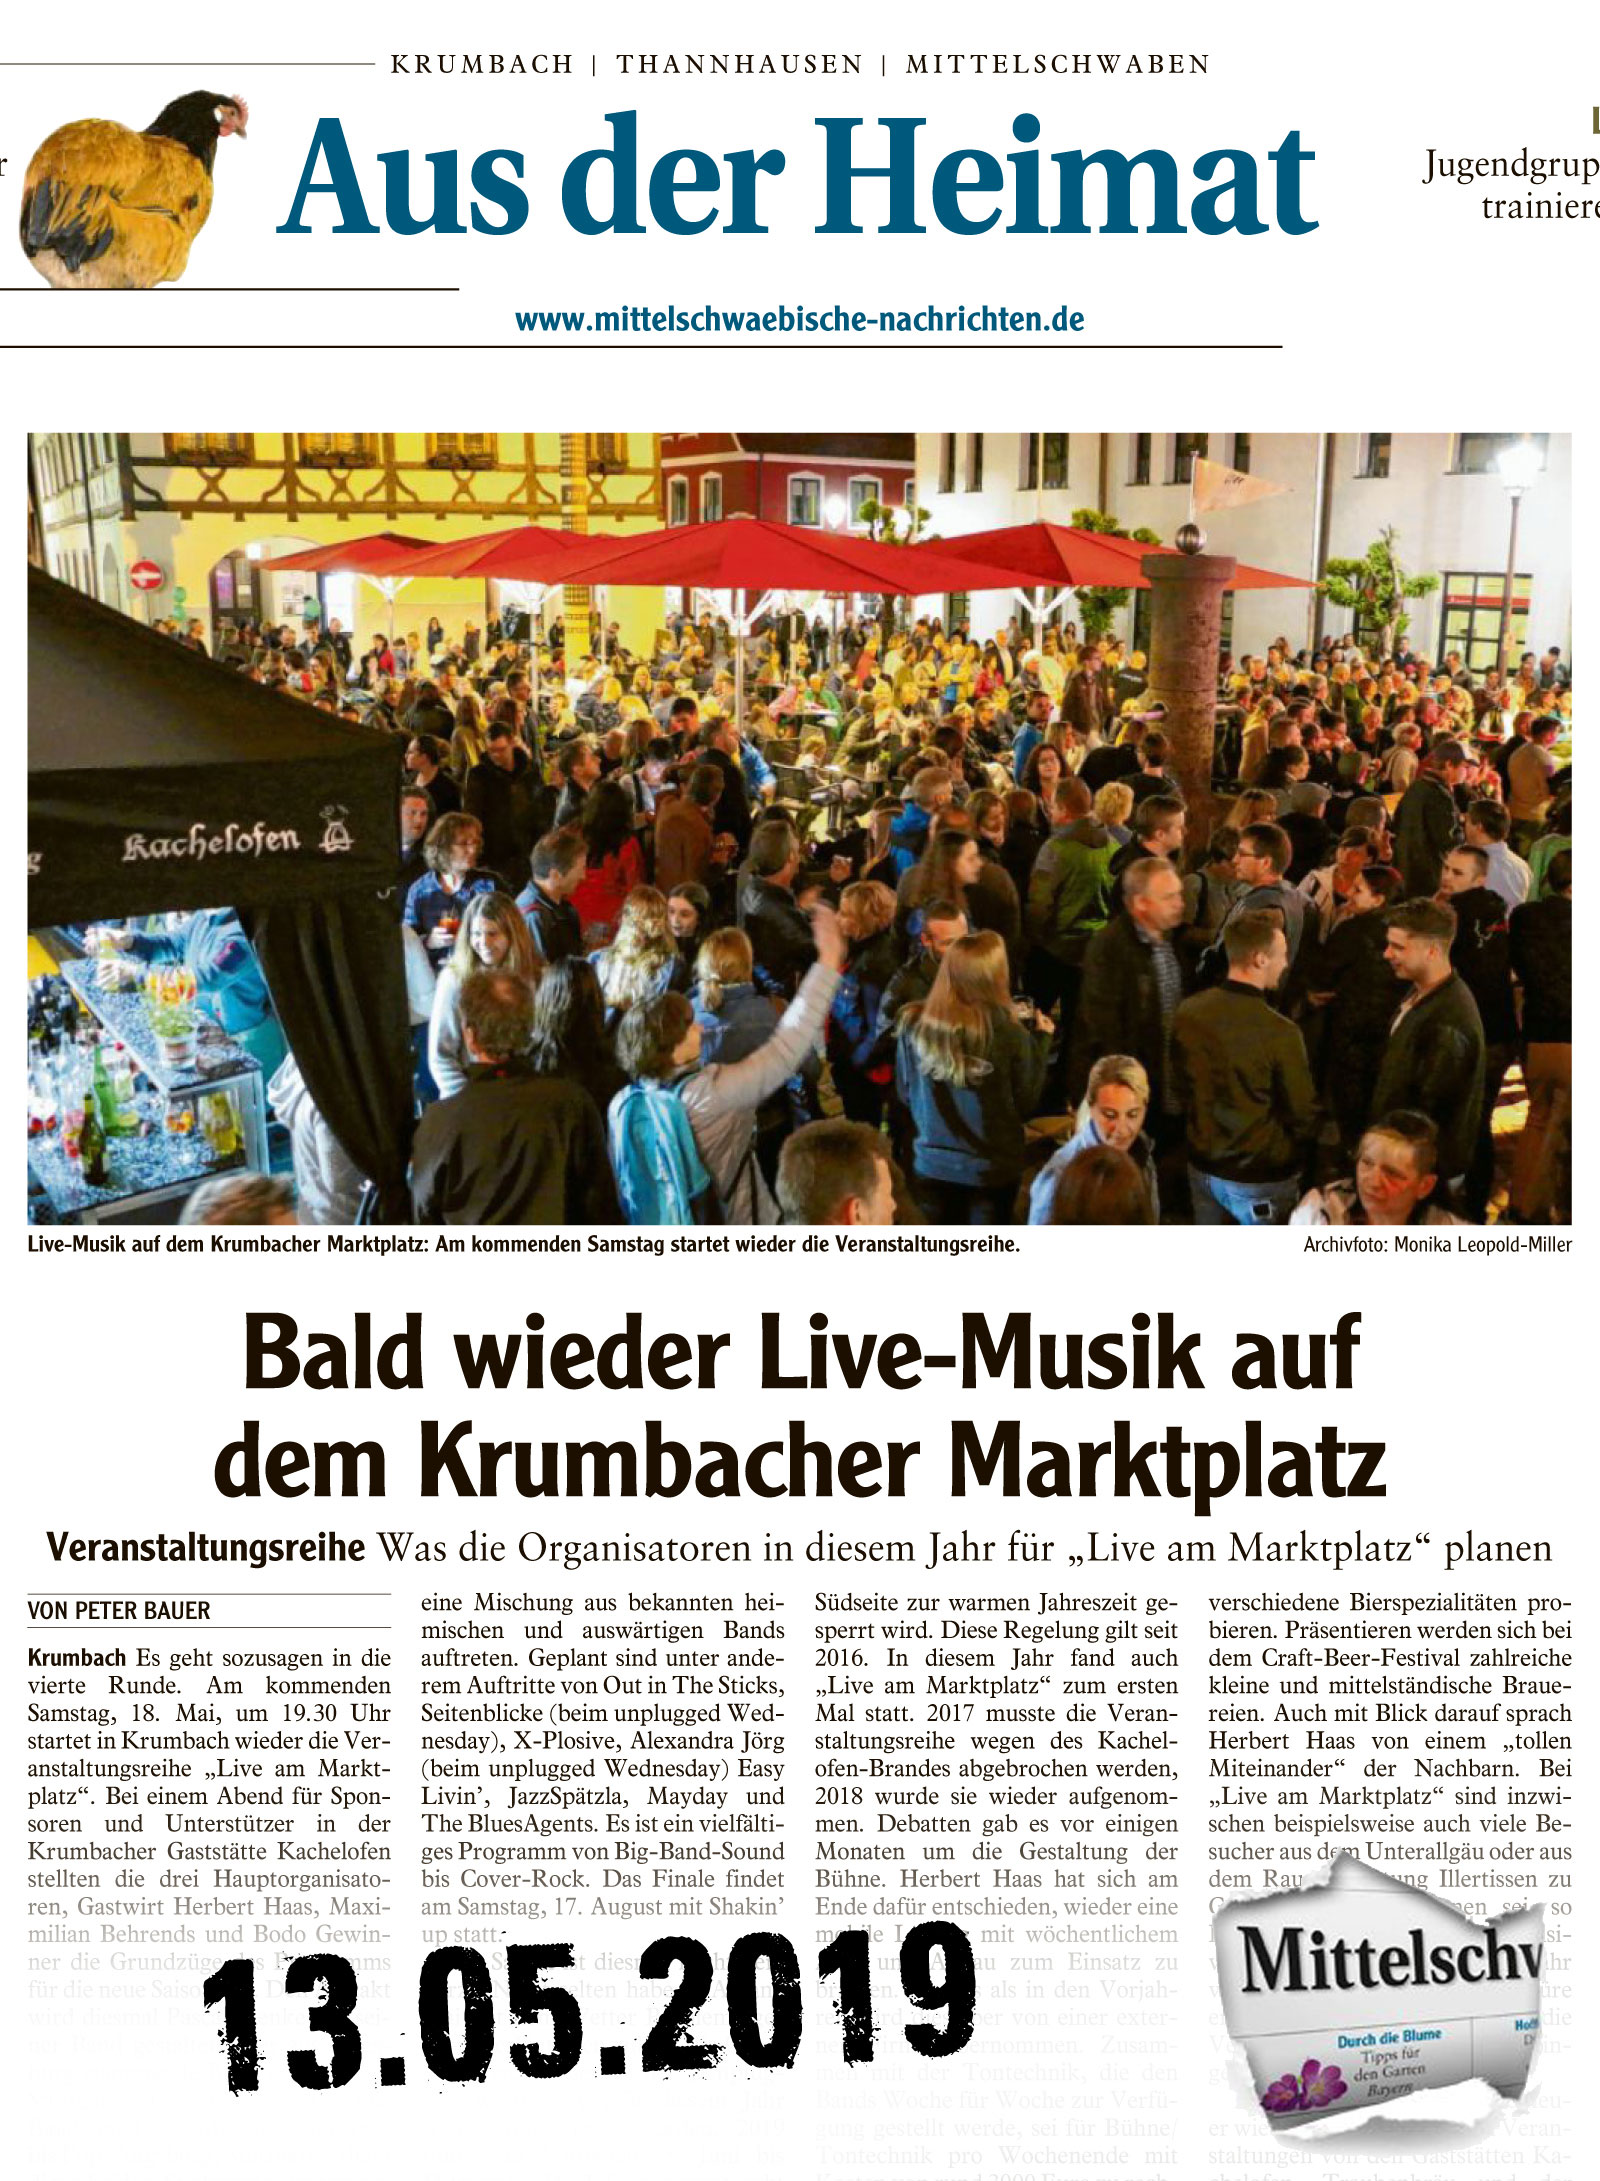 Mittelschwaebische Nachrichten vom 13.05.2019 "live am Marktplatz" Start in die Saison 2019